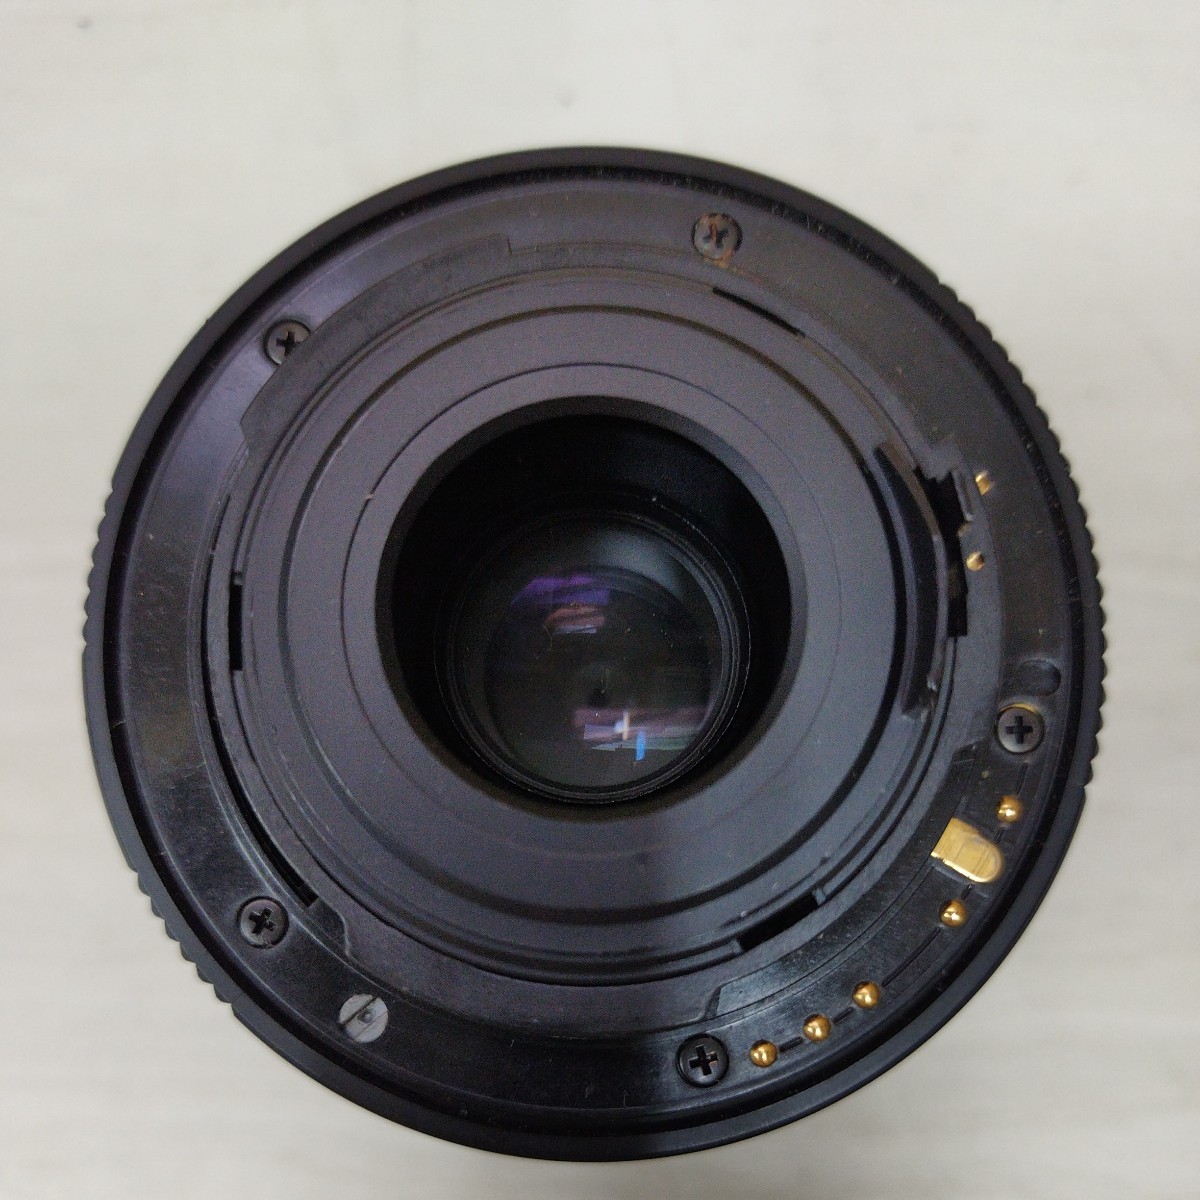 SMC PENTAX-DAL 1:3.5-5.6 18 - 55mm AL Φ52 ペンタックス カメラレンズ 未確認 LENS1691_画像8